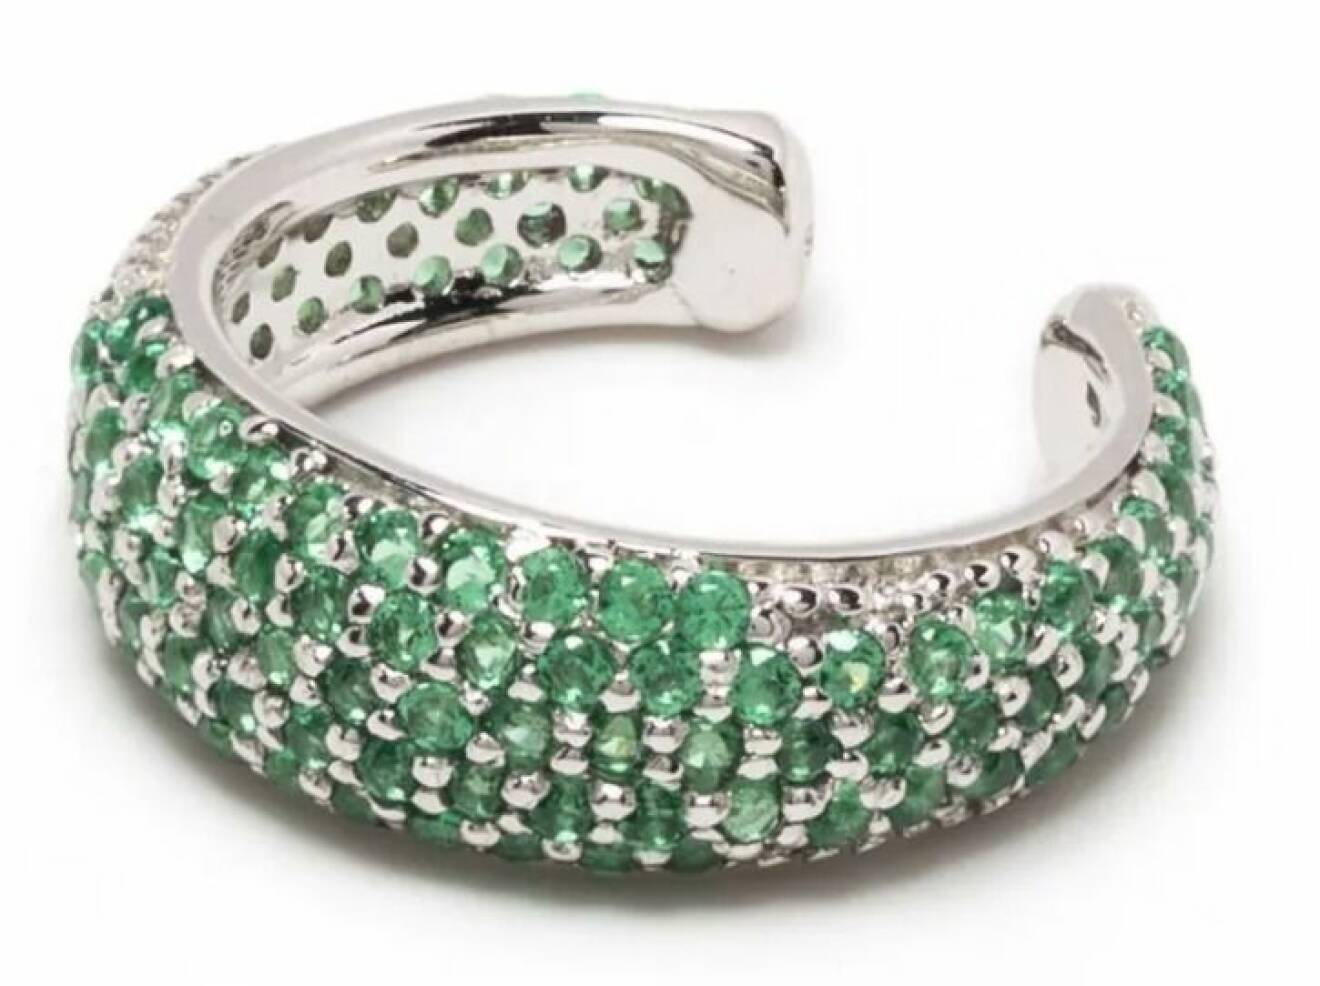 grön earcuff som pryds av kubikformade dekorativa Zirconiastenar från Tom Wood.